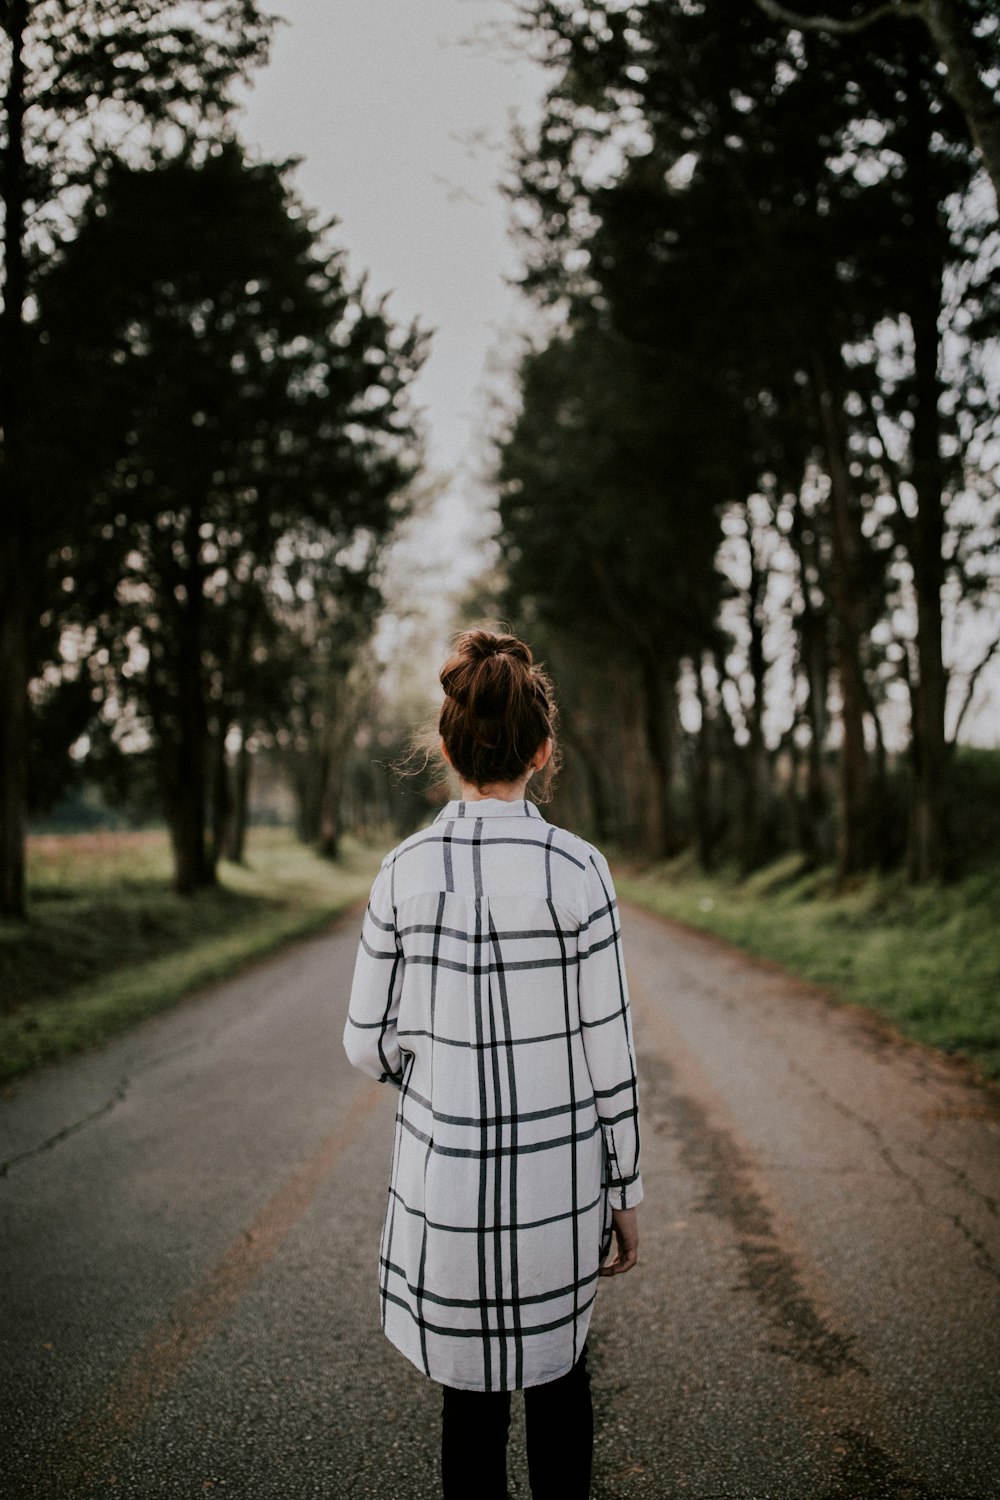 Fotografia de lente tilt-shift da mulher em pé na estrada cinzenta rodeada de árvores